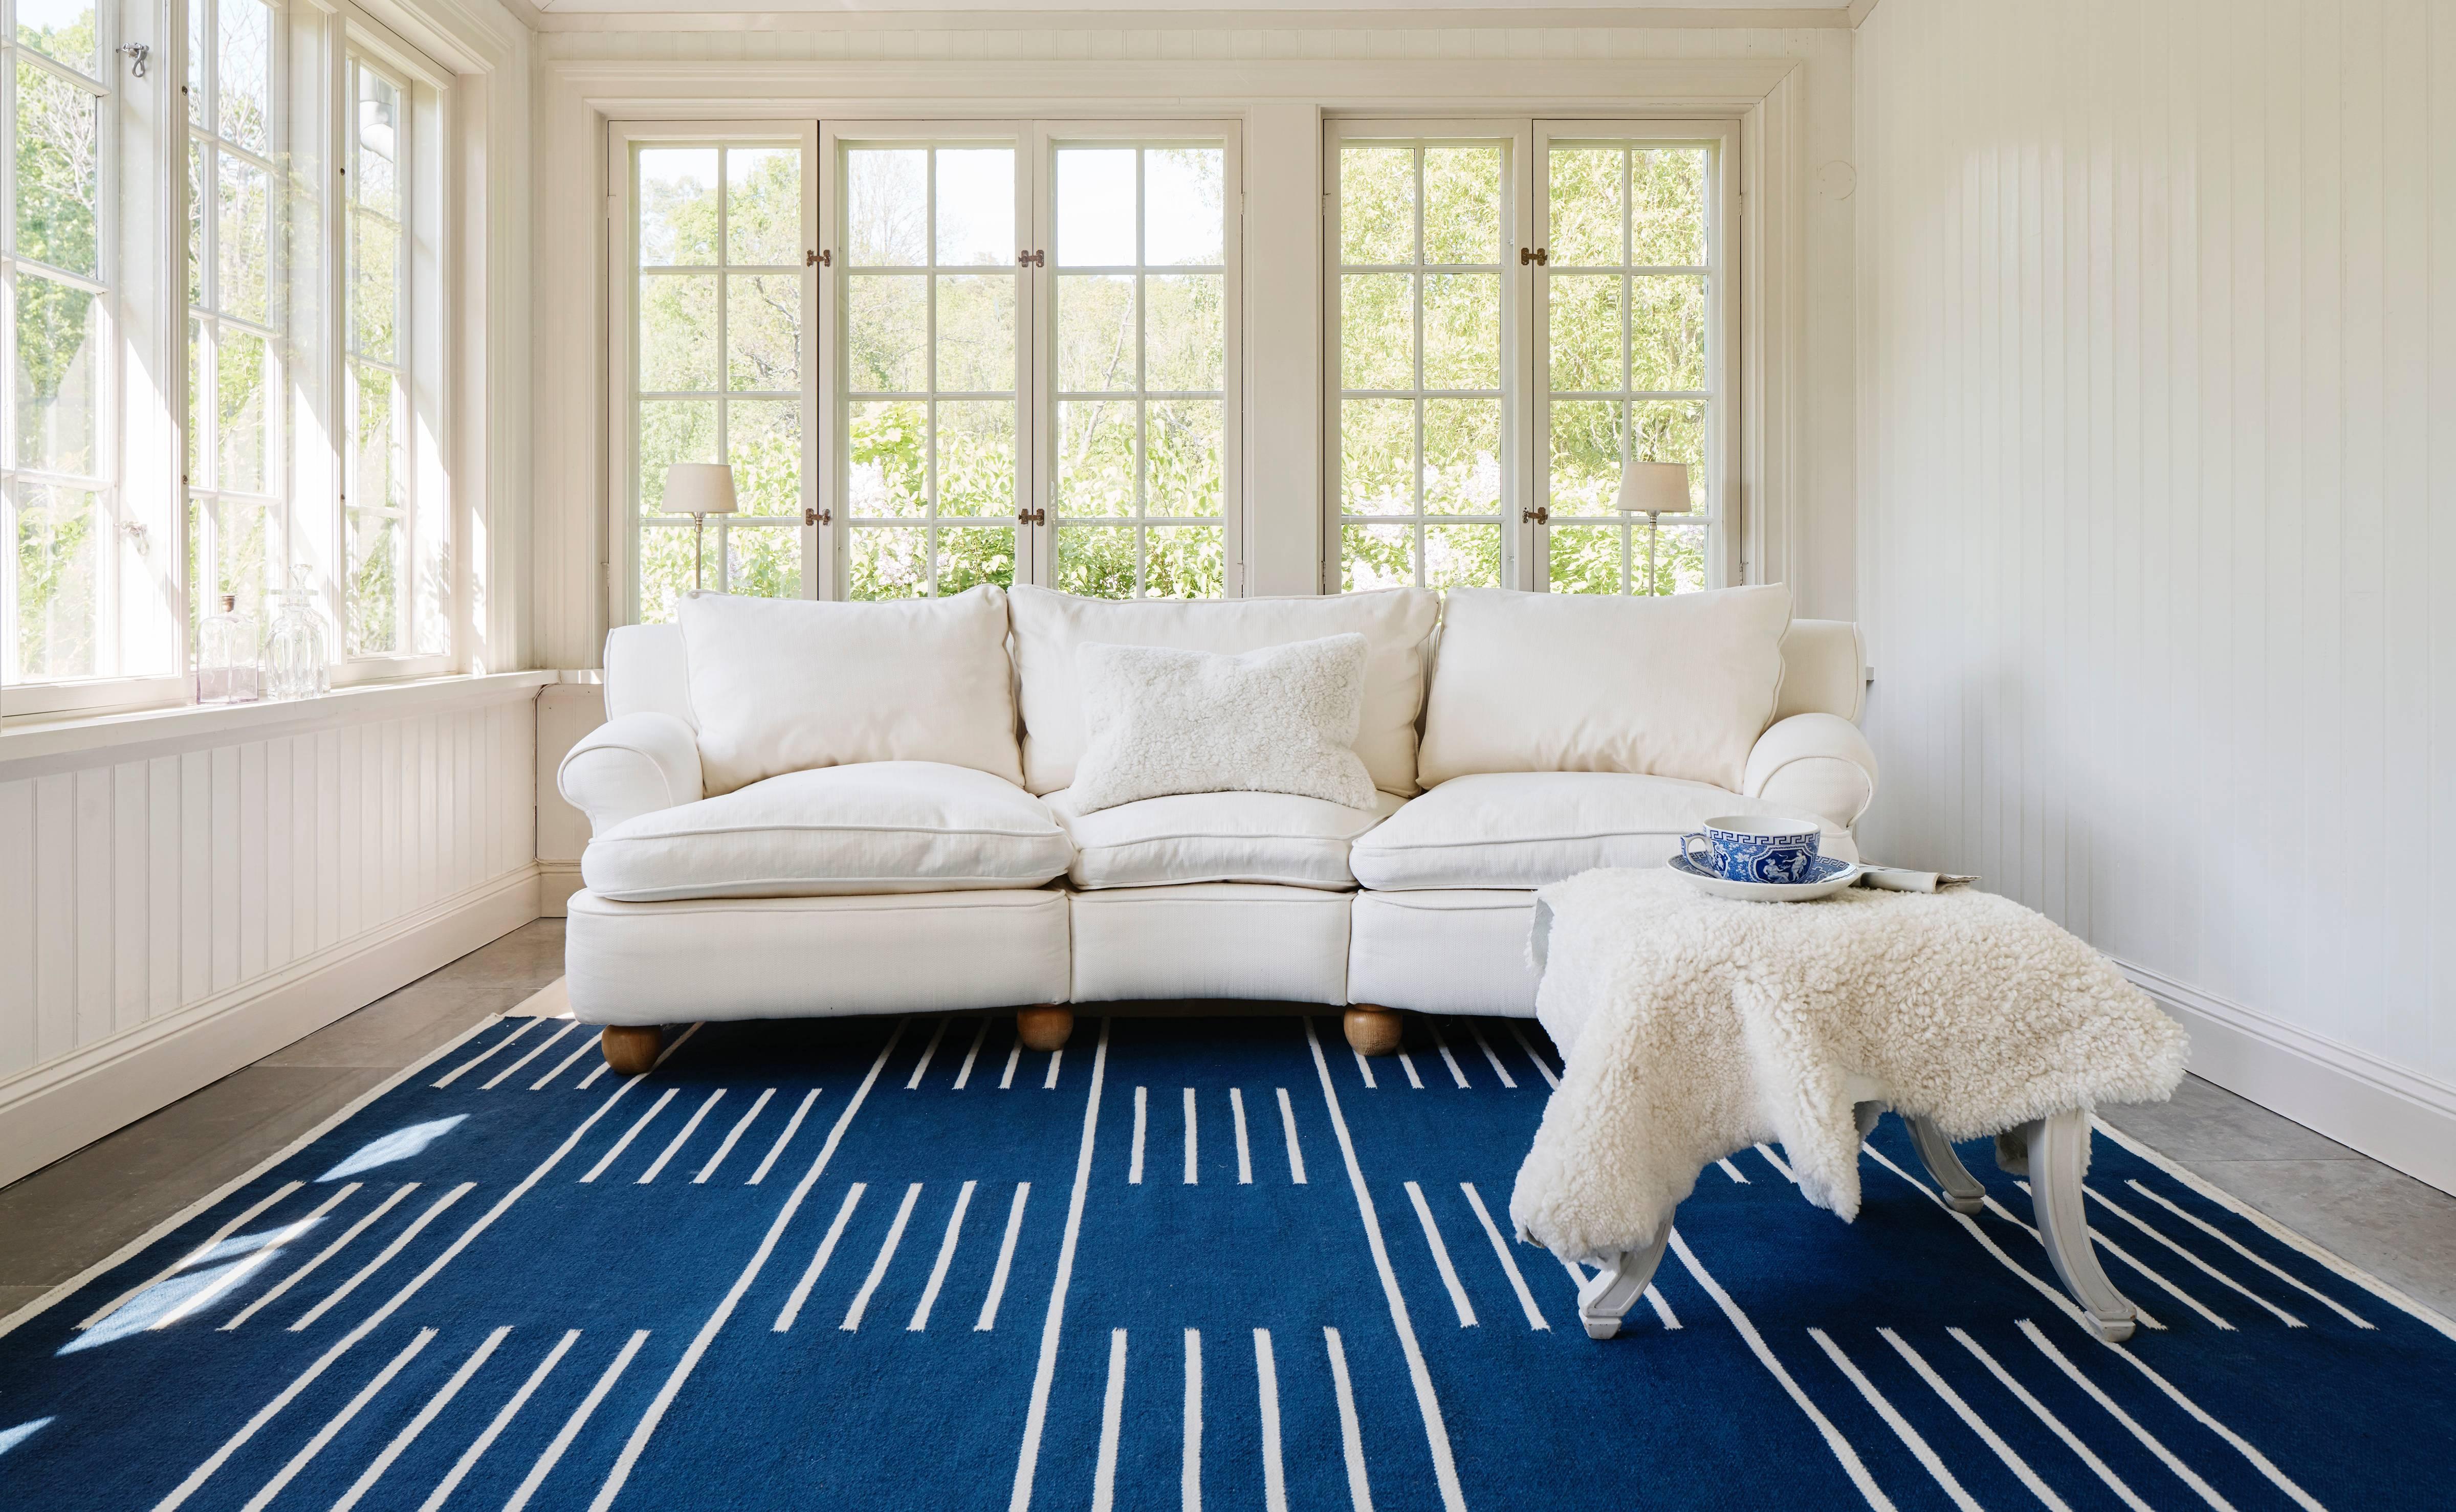 Classic Blue/Cream est un tapis dhurrie/kilim moderne au design scandinave. Il est disponible en différentes tailles - voir les options de personnalisation ci-dessous.

Un design traditionnel inspiré des motifs scandinaves classiques. Le tapis est